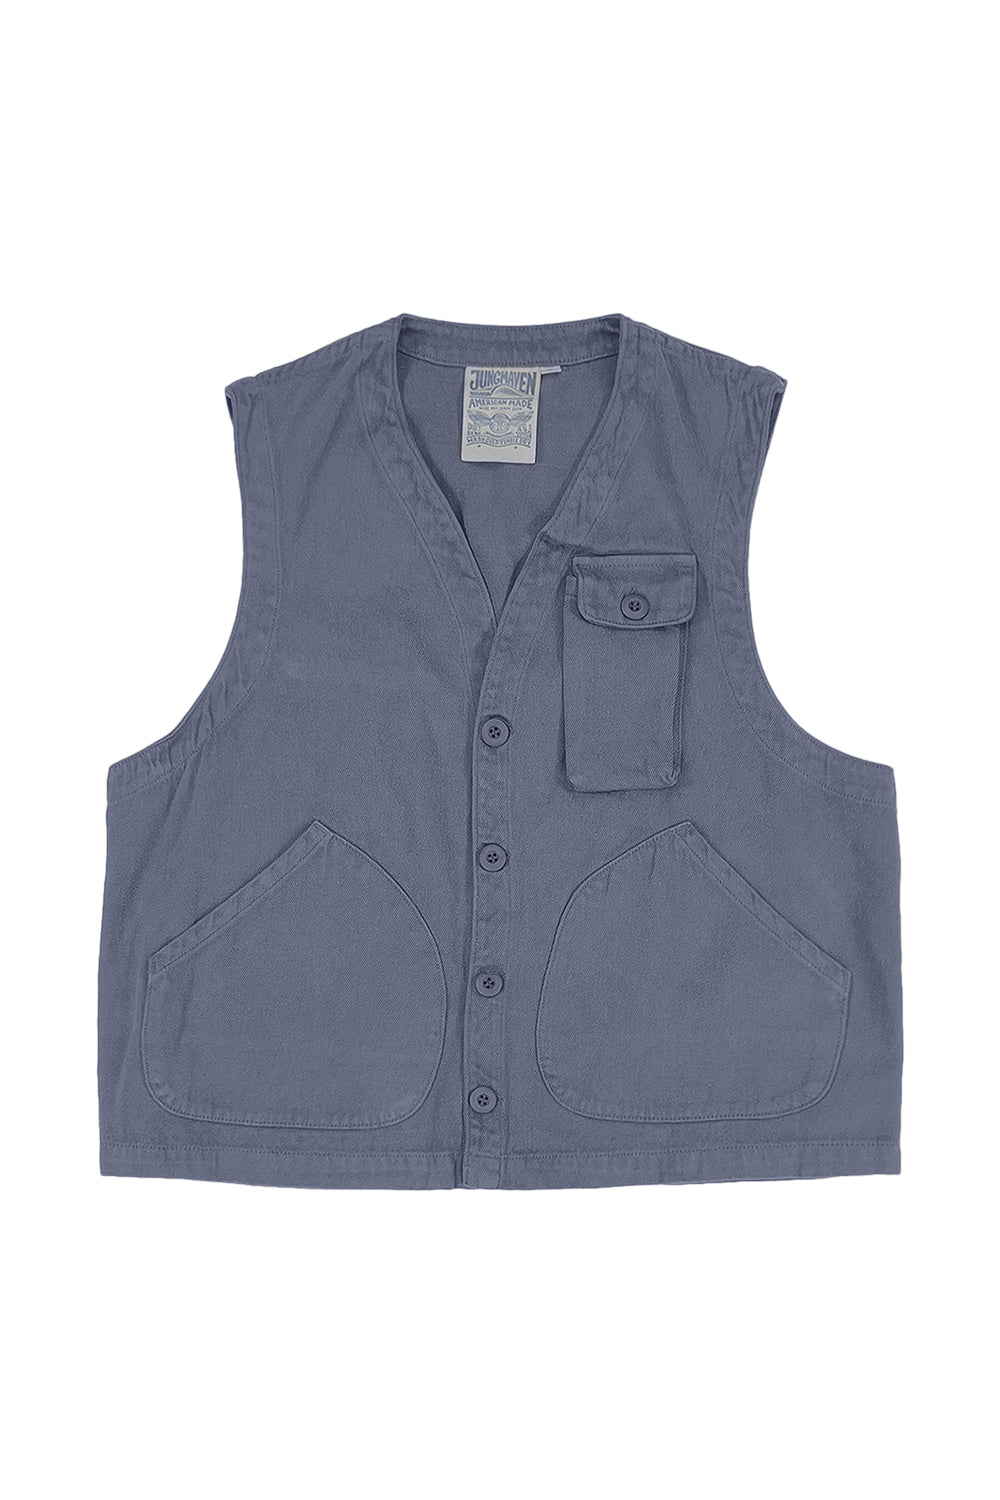 Falcon Vest | Jungmaven Hemp Clothing & Accessories / Color: Diesel Gray